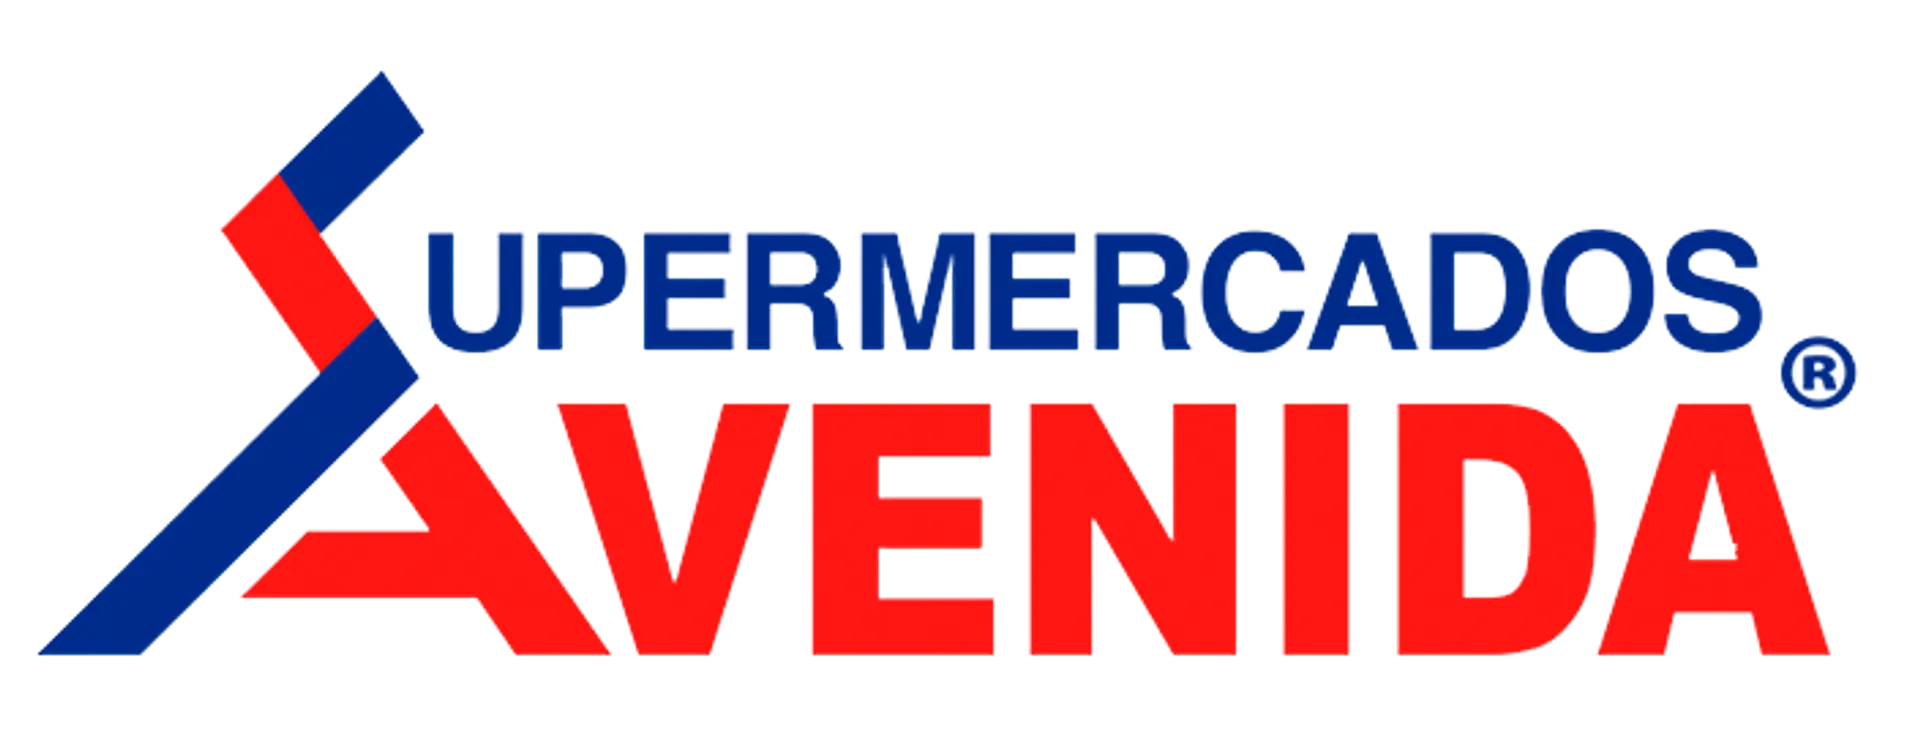 SUPERMERCADOS AVENIDA logo